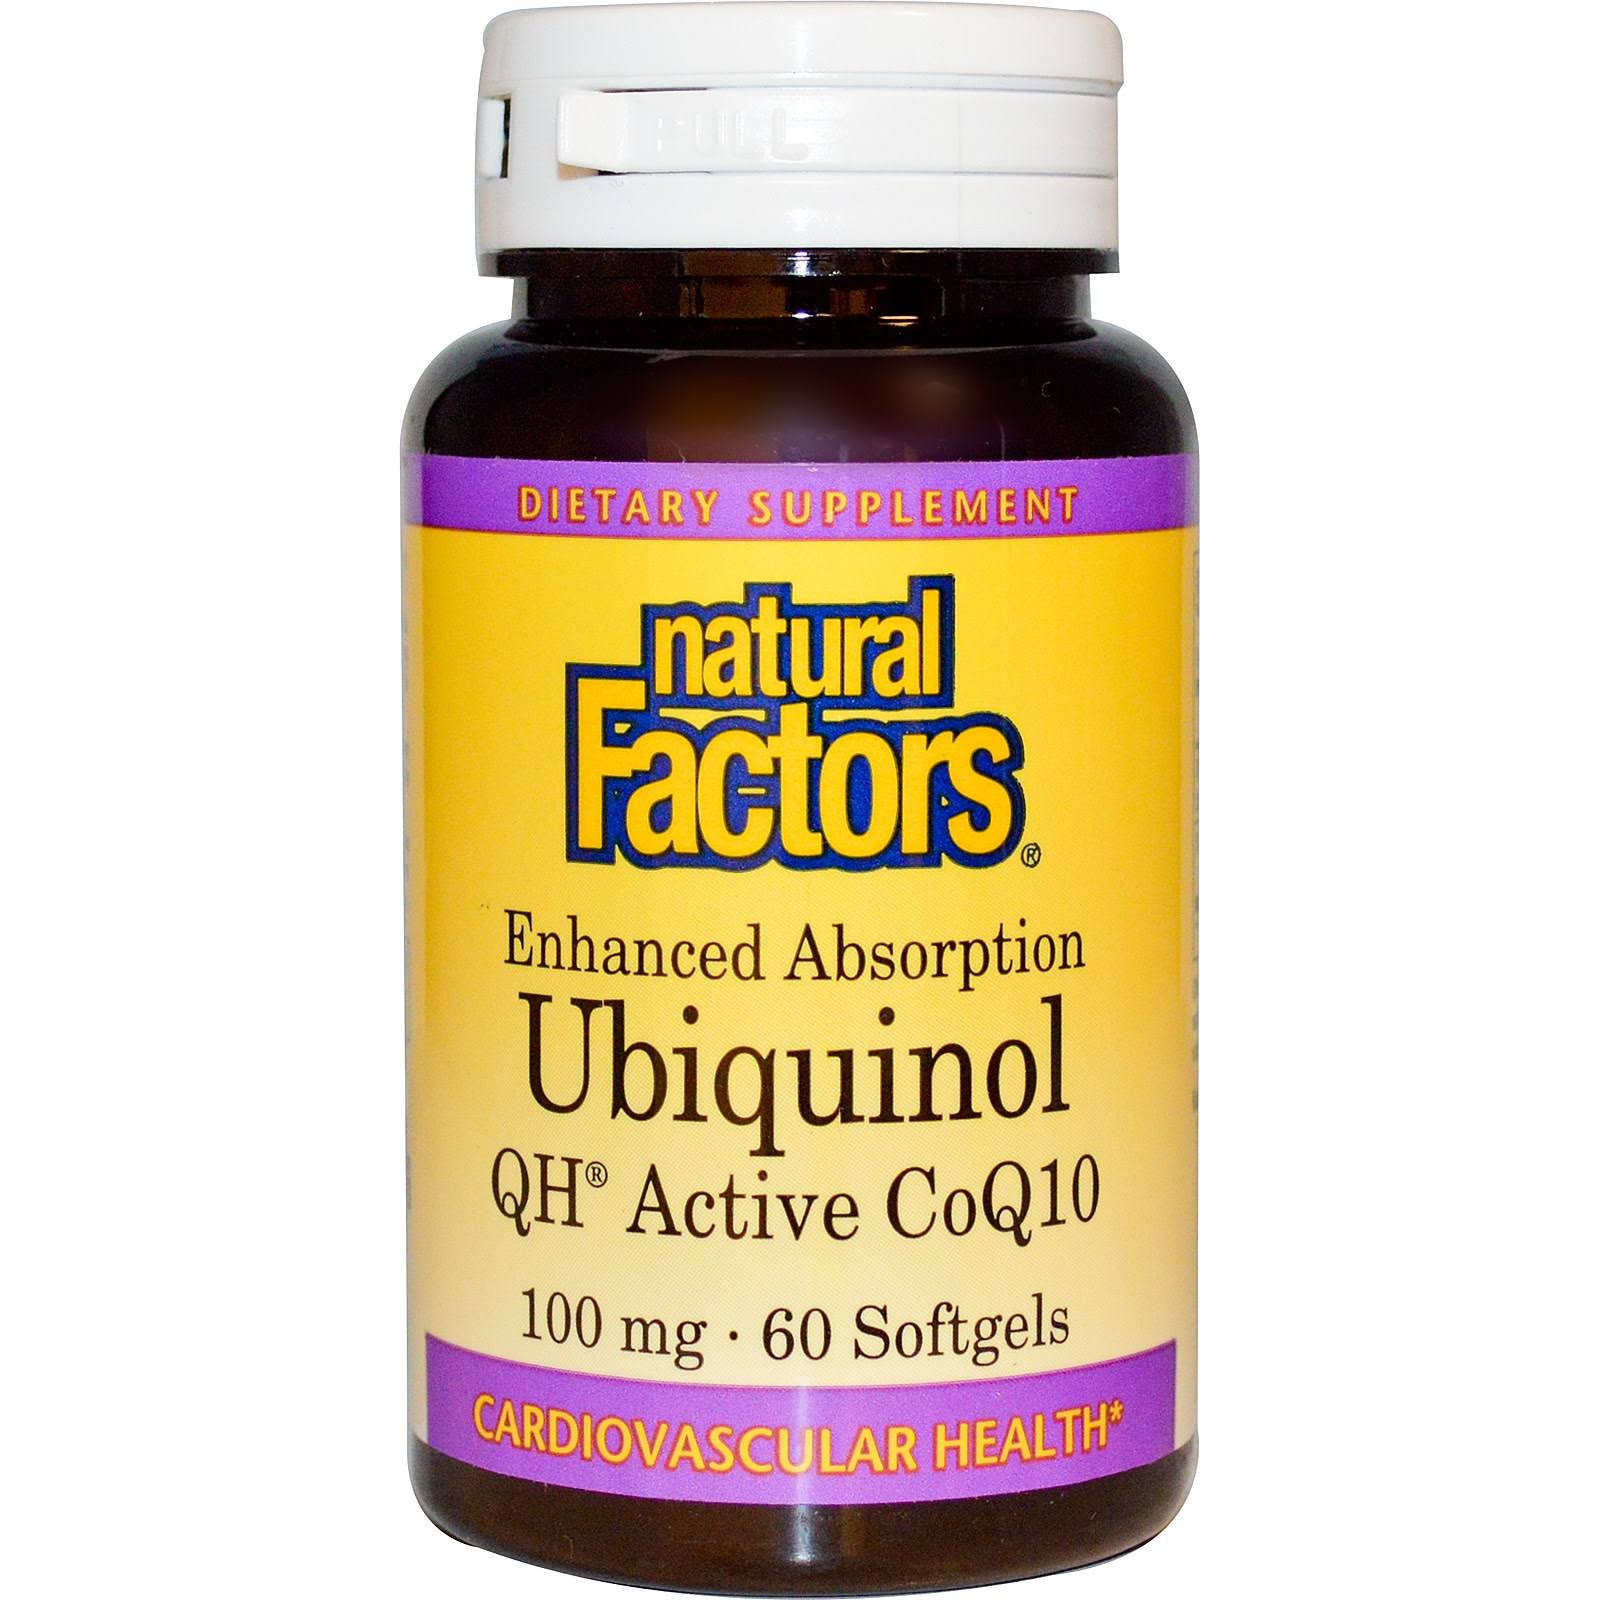 Natural Factors Ubiquinol 100Mg Dietary Supplement - 60 Softgels